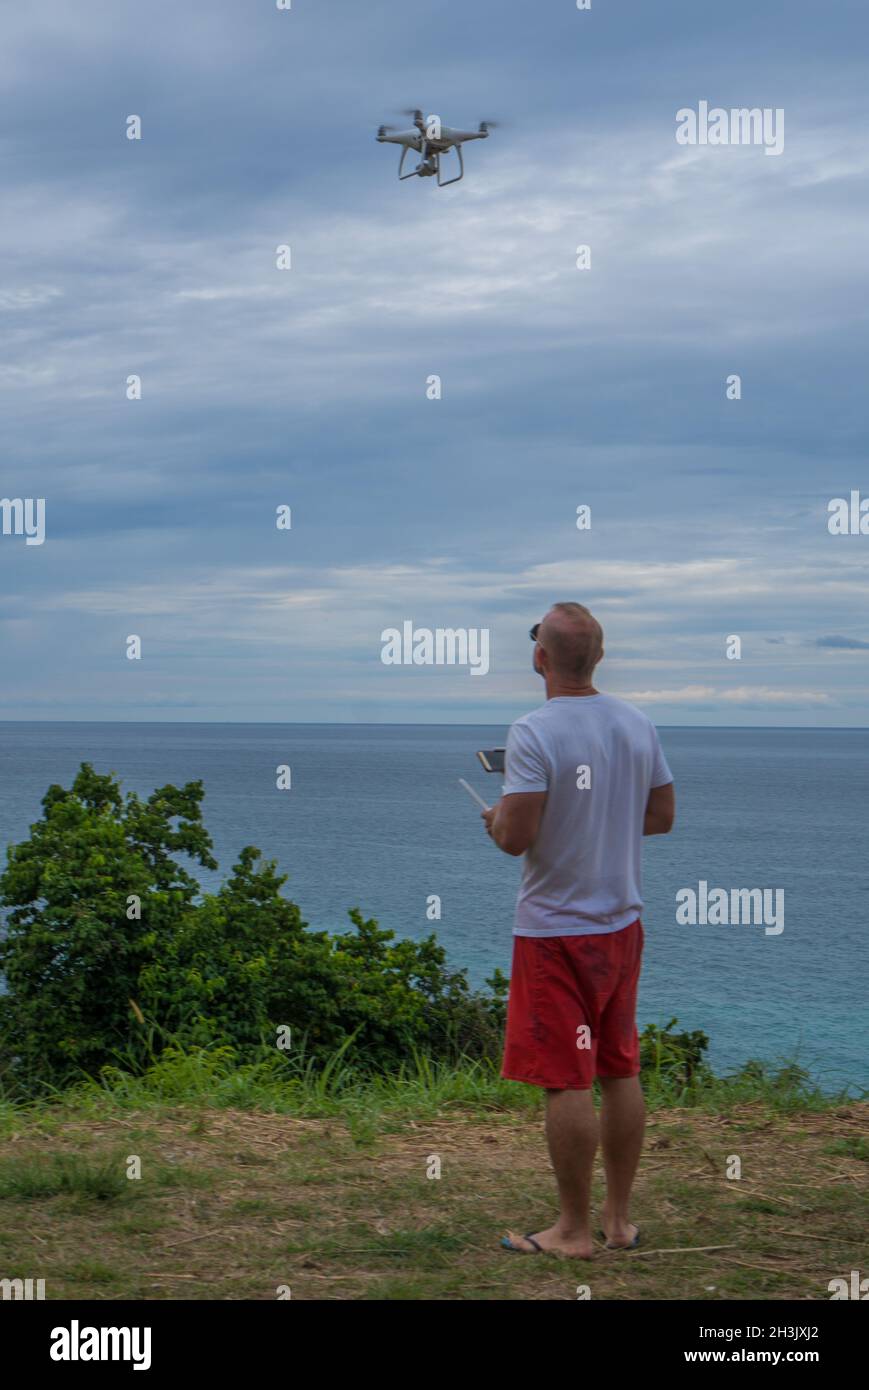 Mann mit Drohnenkamera, der Fotos vom schönen Meer gemacht hat Stockfoto